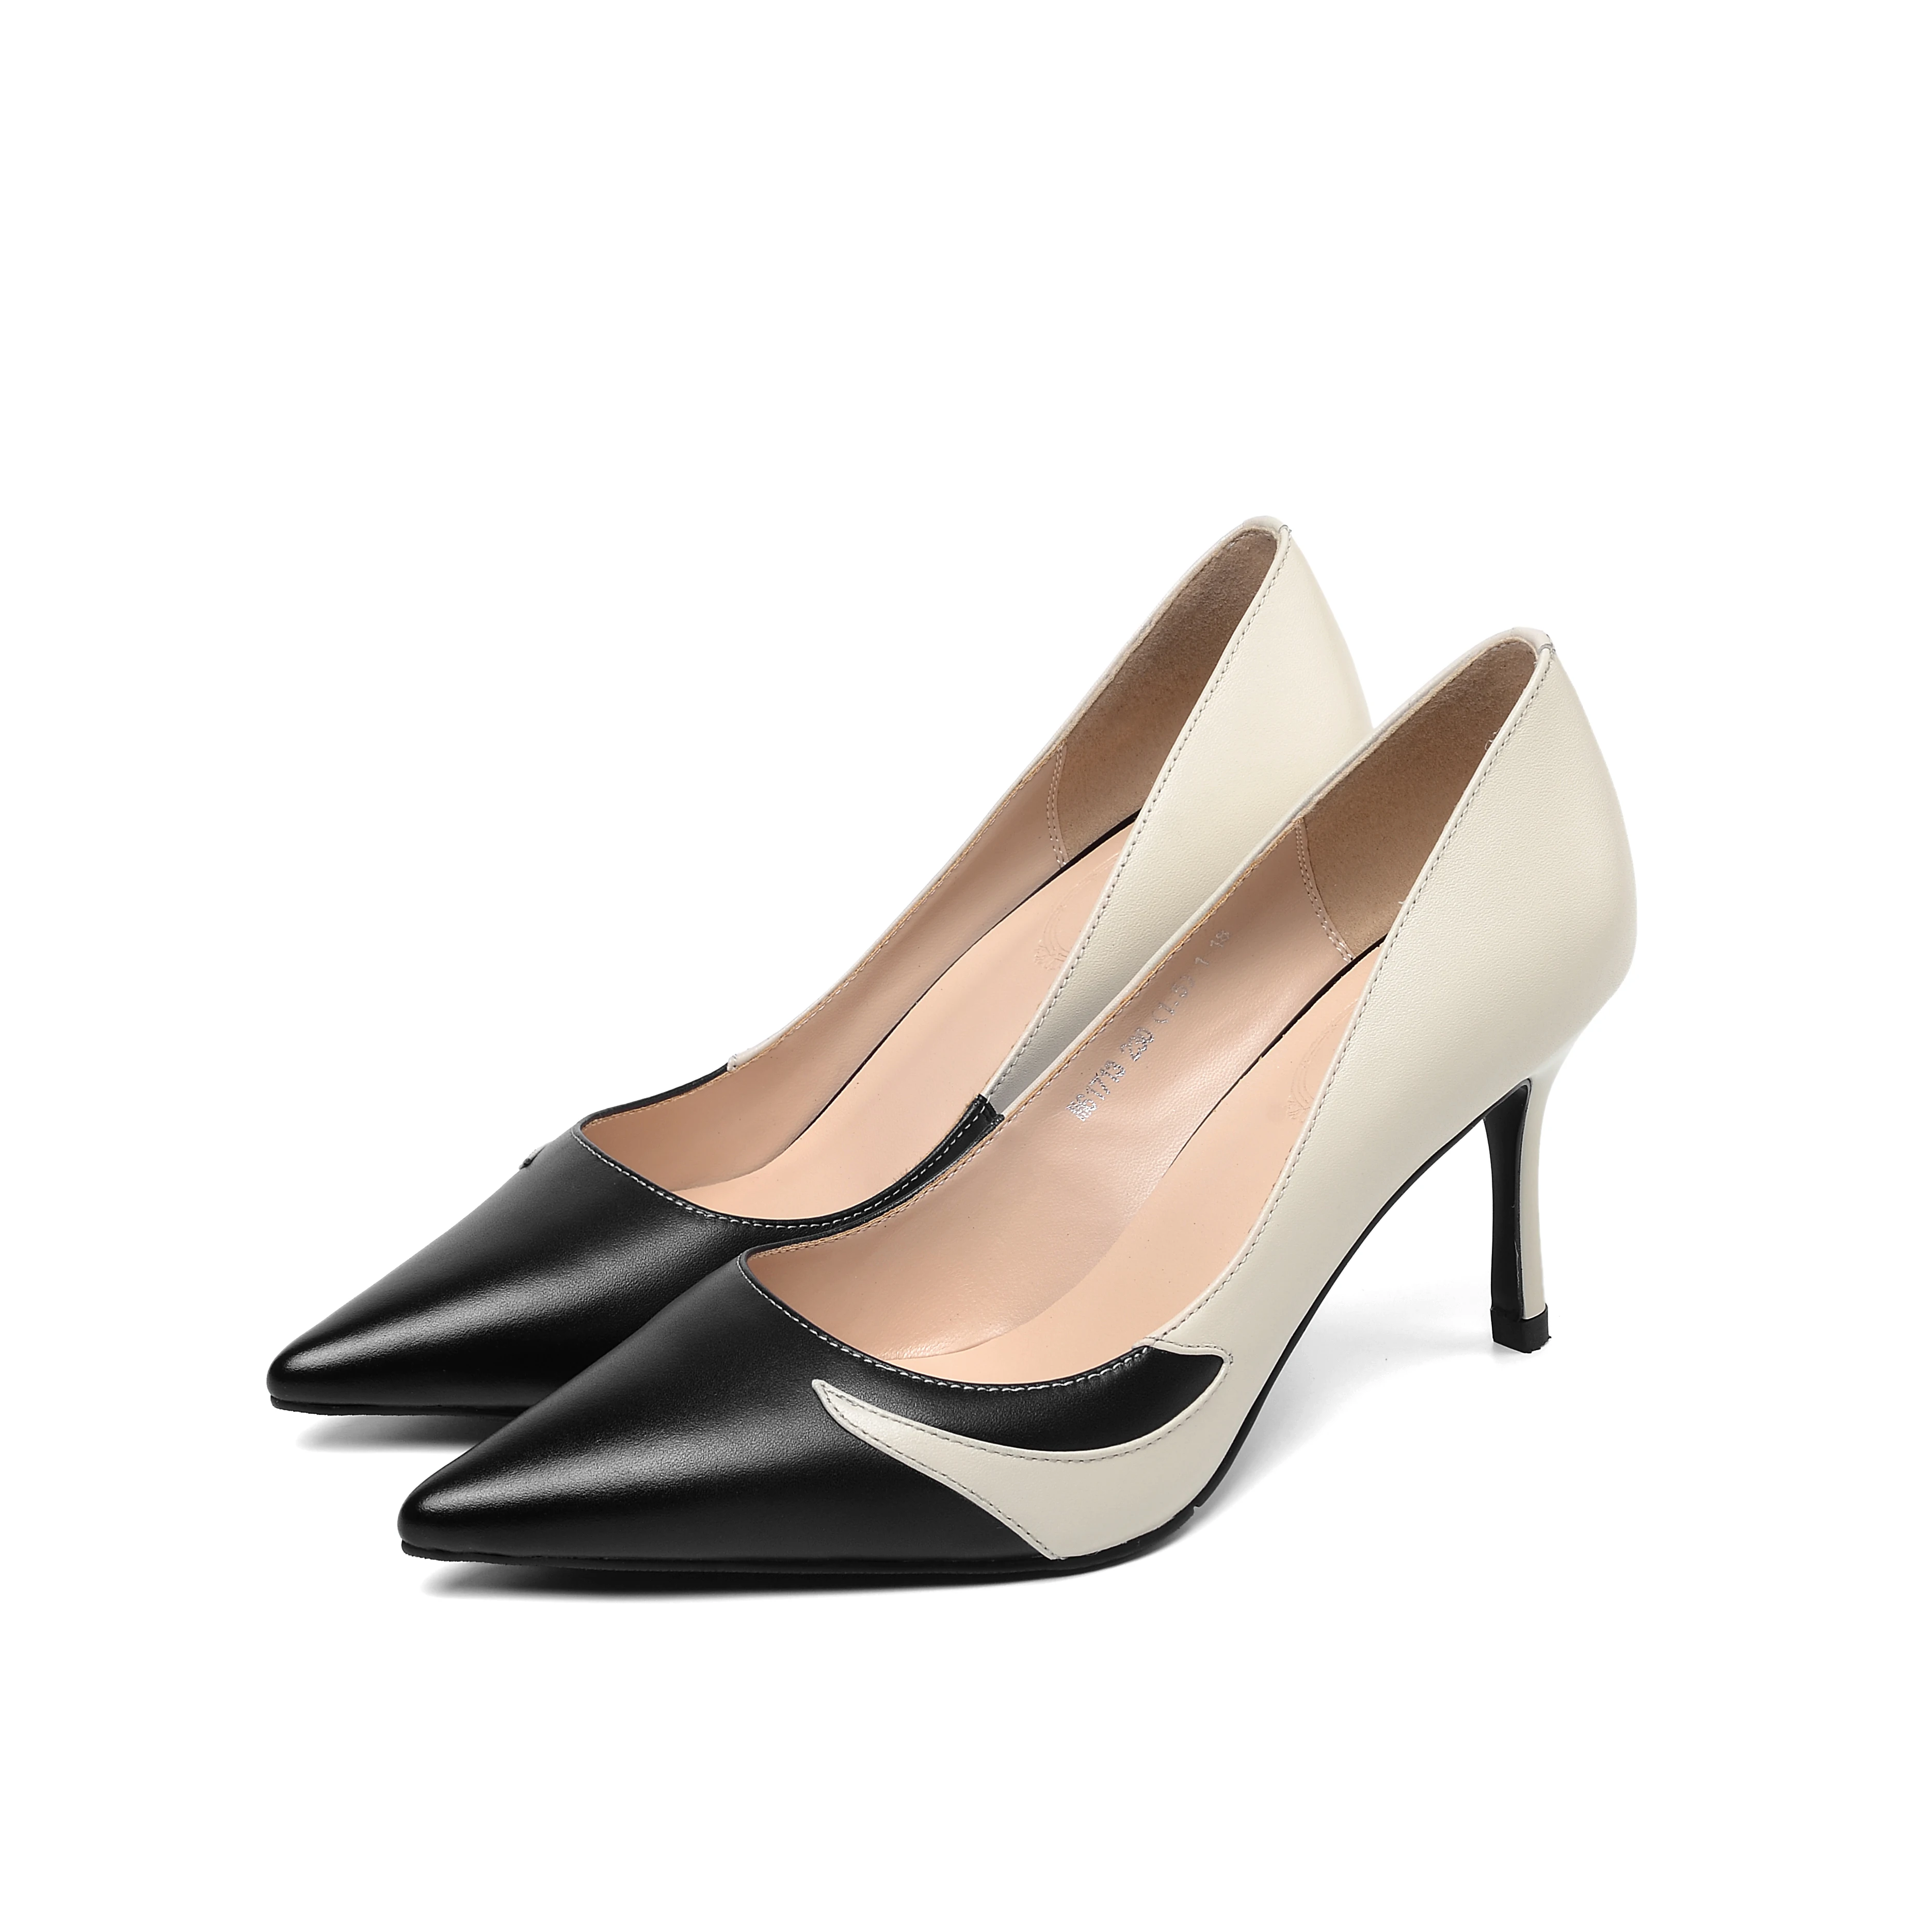 Женская обувь на высоком каблуке Кожаные туфли-лодочки женская обувь Модные пикантные туфли-лодочки 7,5 см